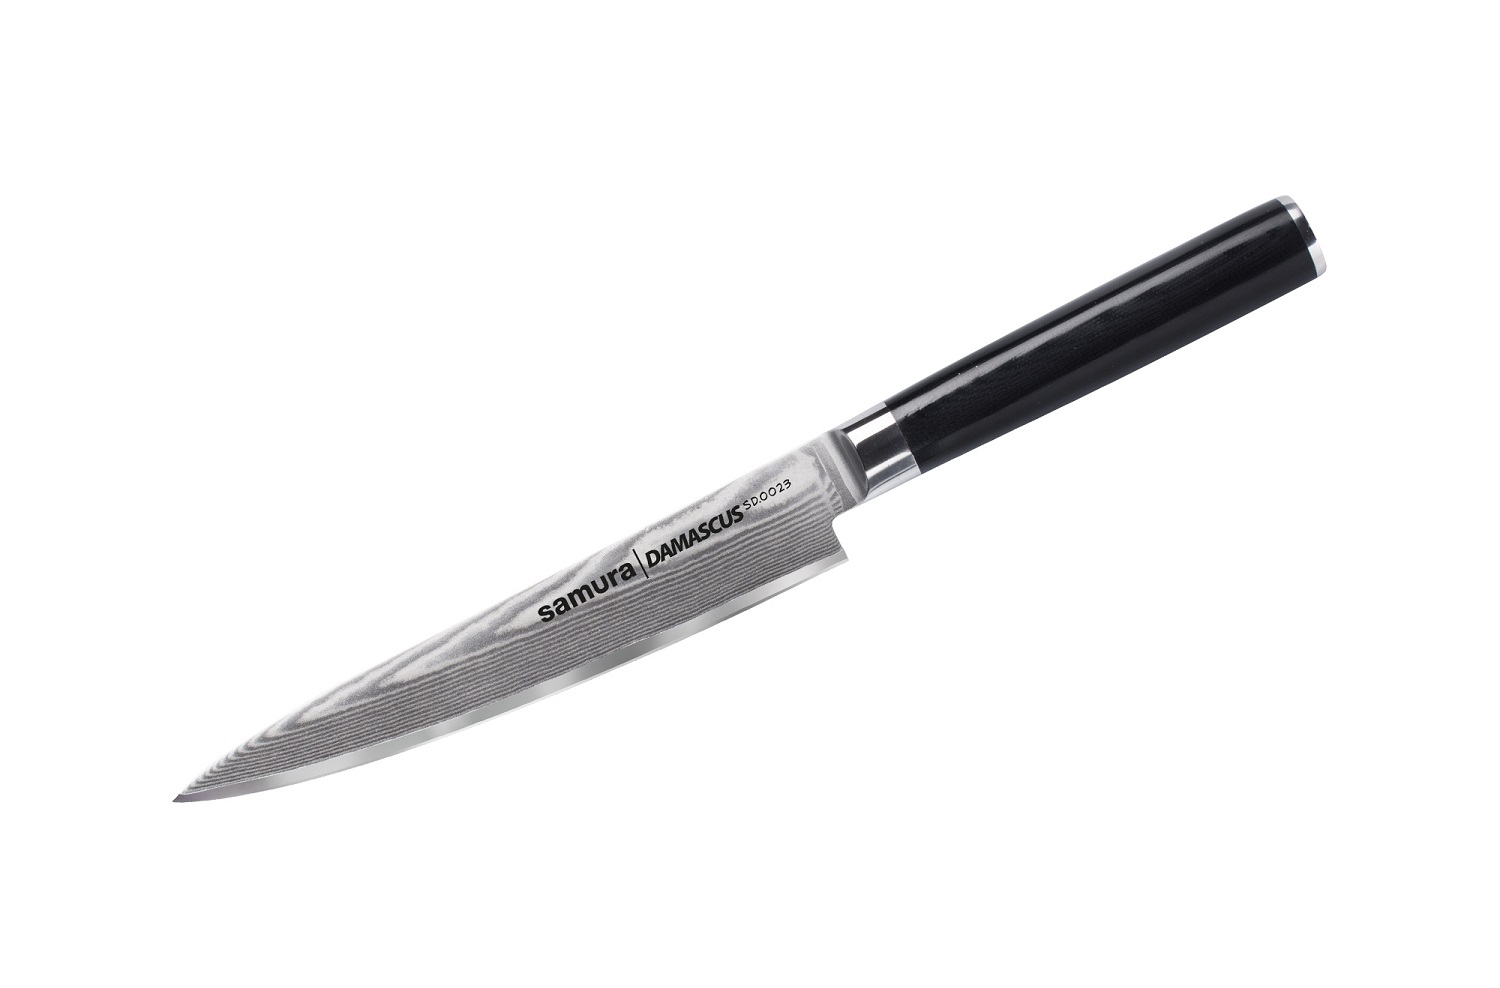 Нож Samura универсальный Damascus, 15 см, G-10, дамаск 67 слоев нож samura damascus шеф 20 см g 10 дамаск 67 слоев